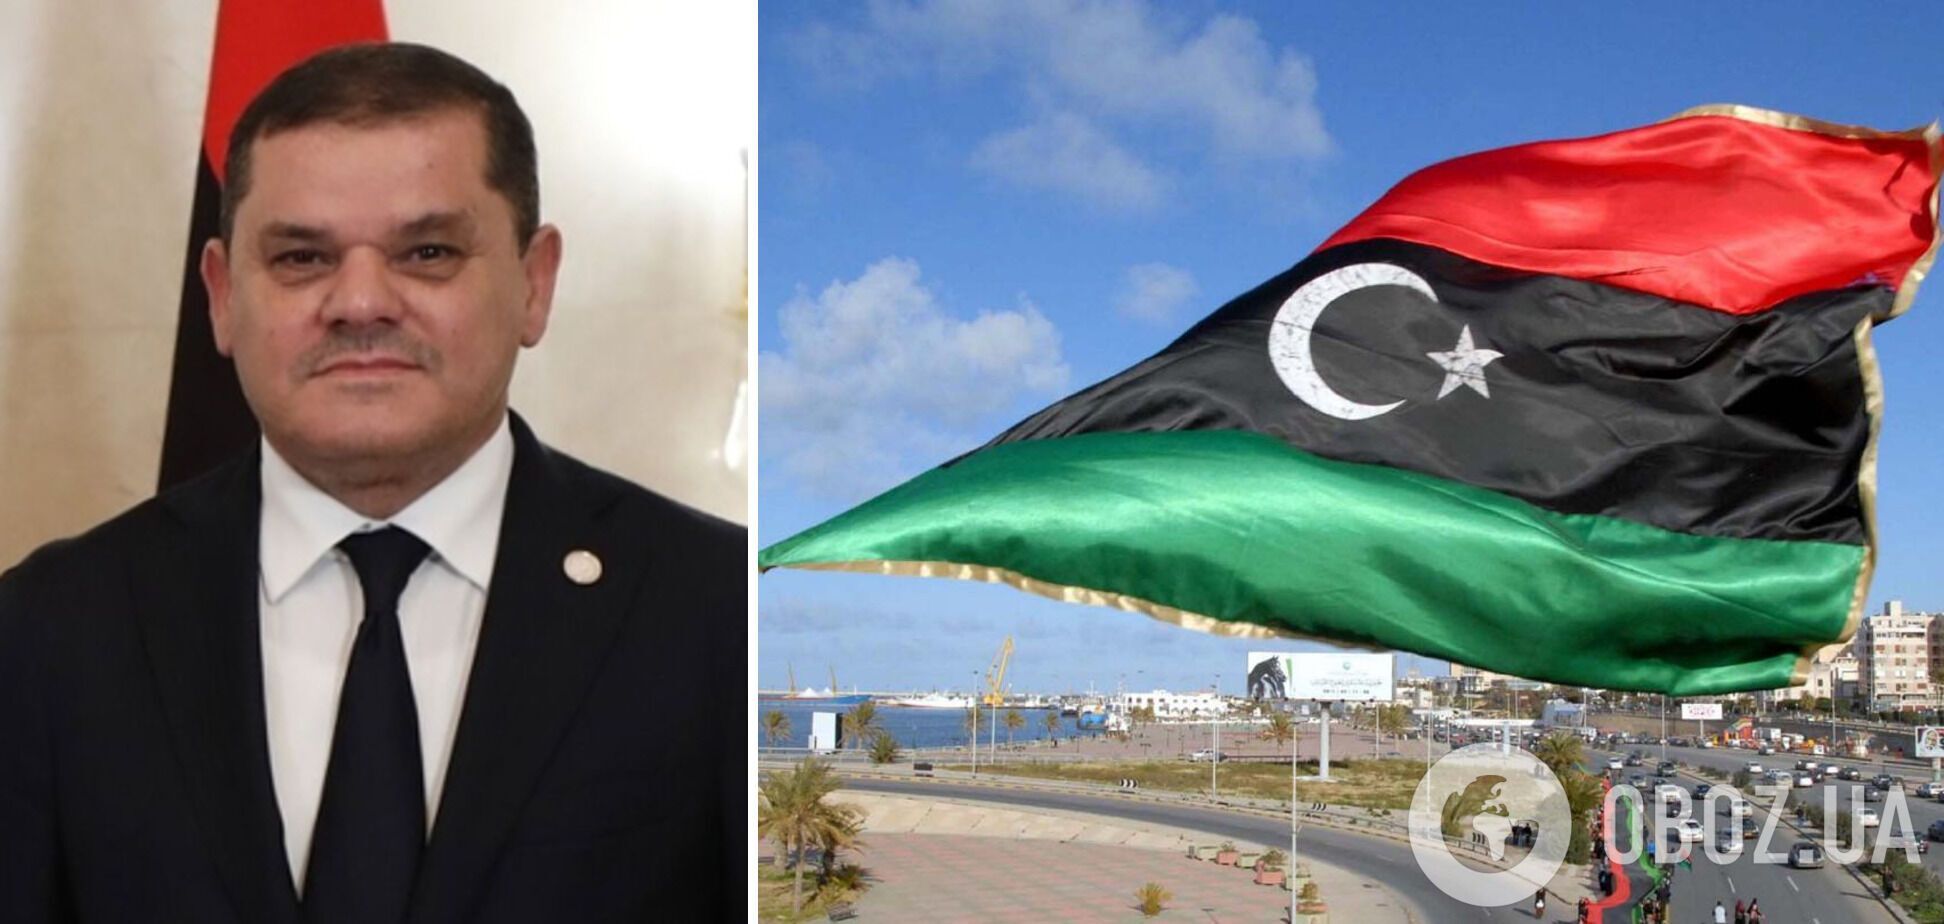 Дбейба занял пост премьера Ливии год назад